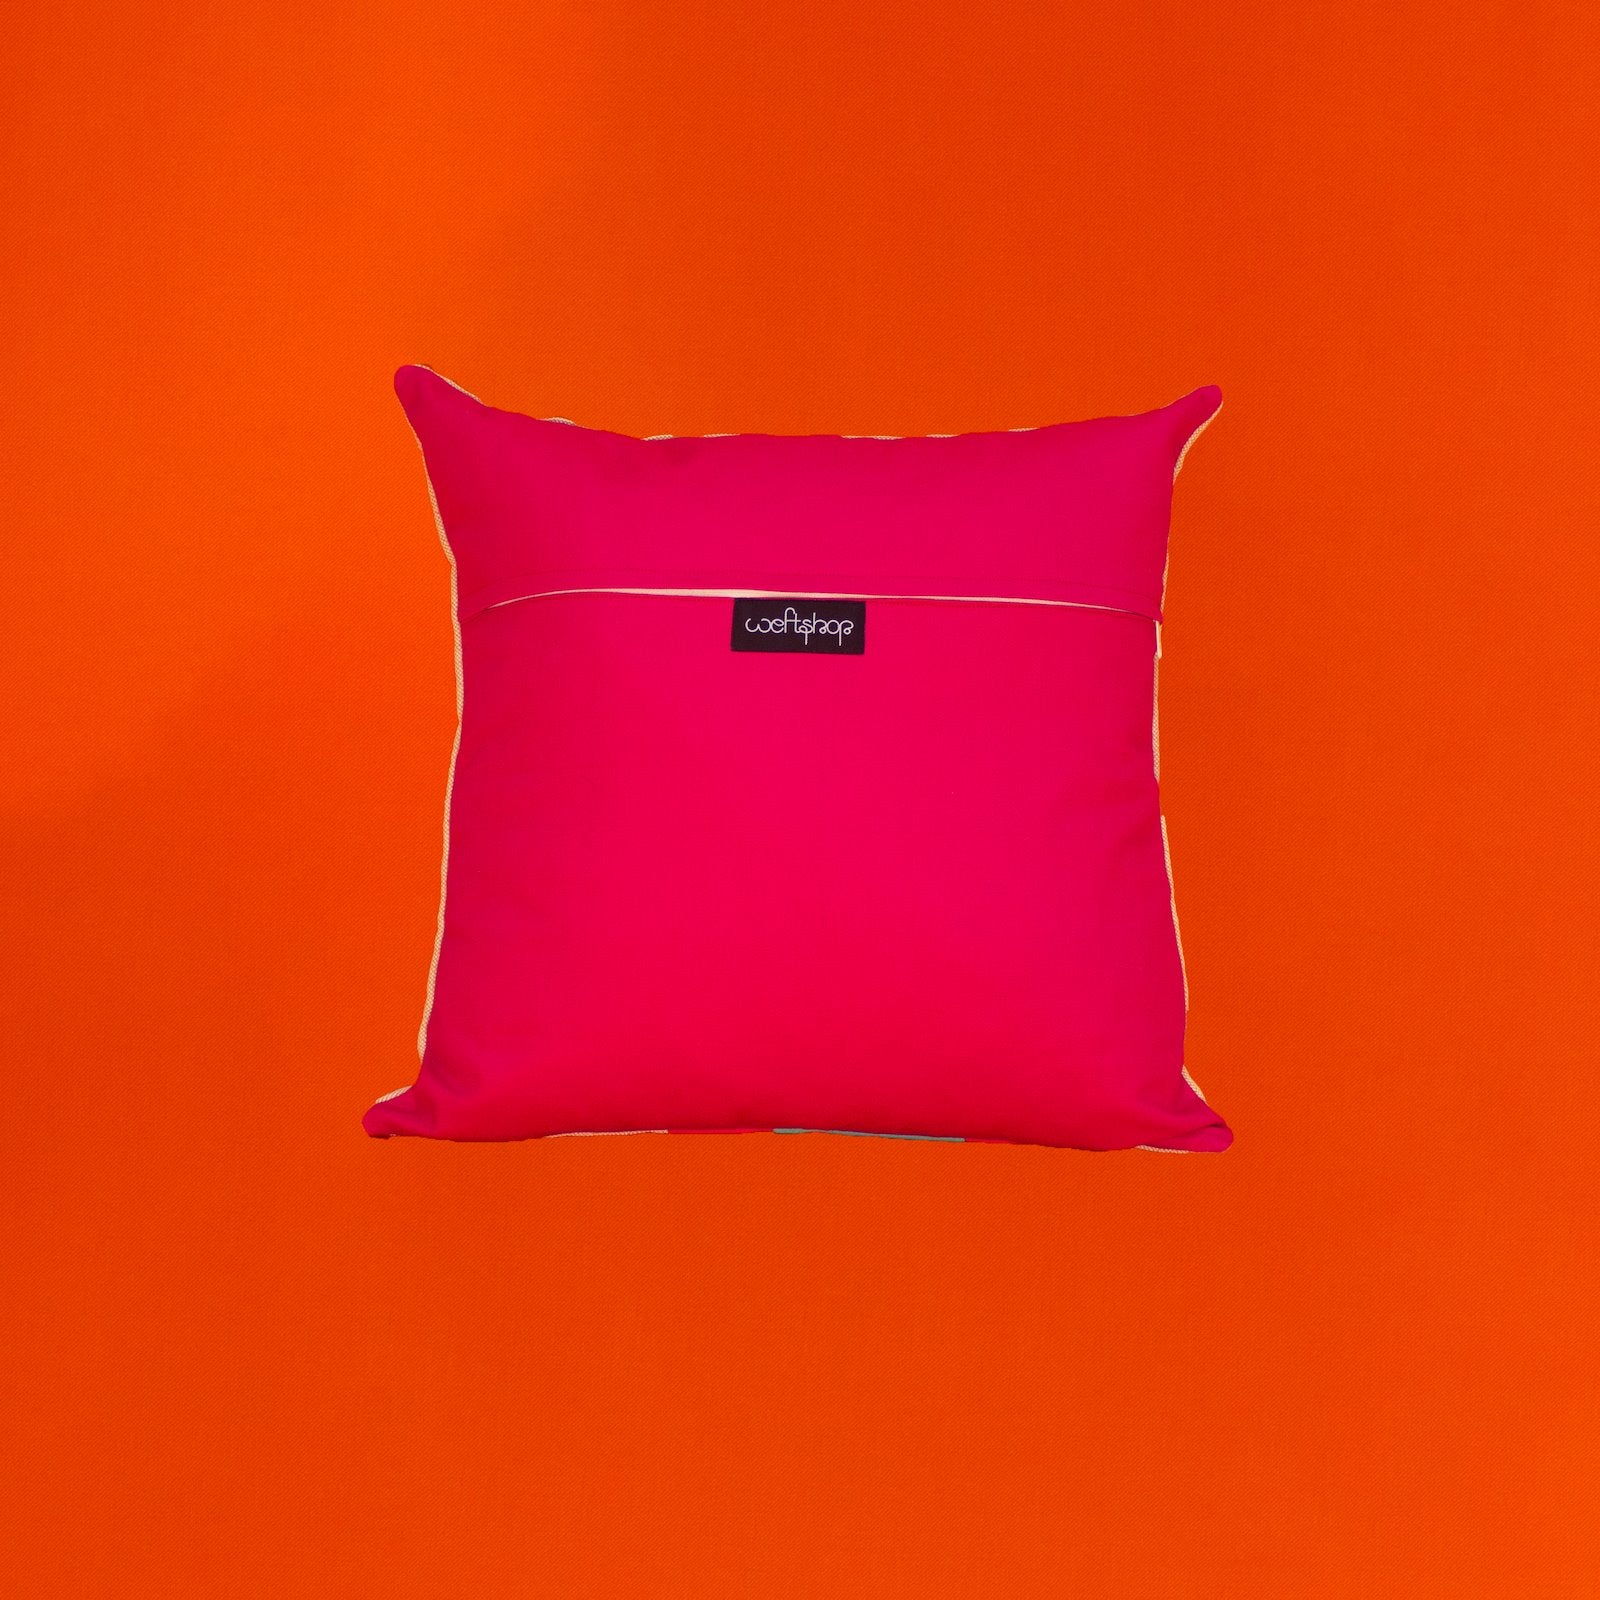 Gumnut Leaf Cushion in Aqua and Hot Pink WEFTshop 